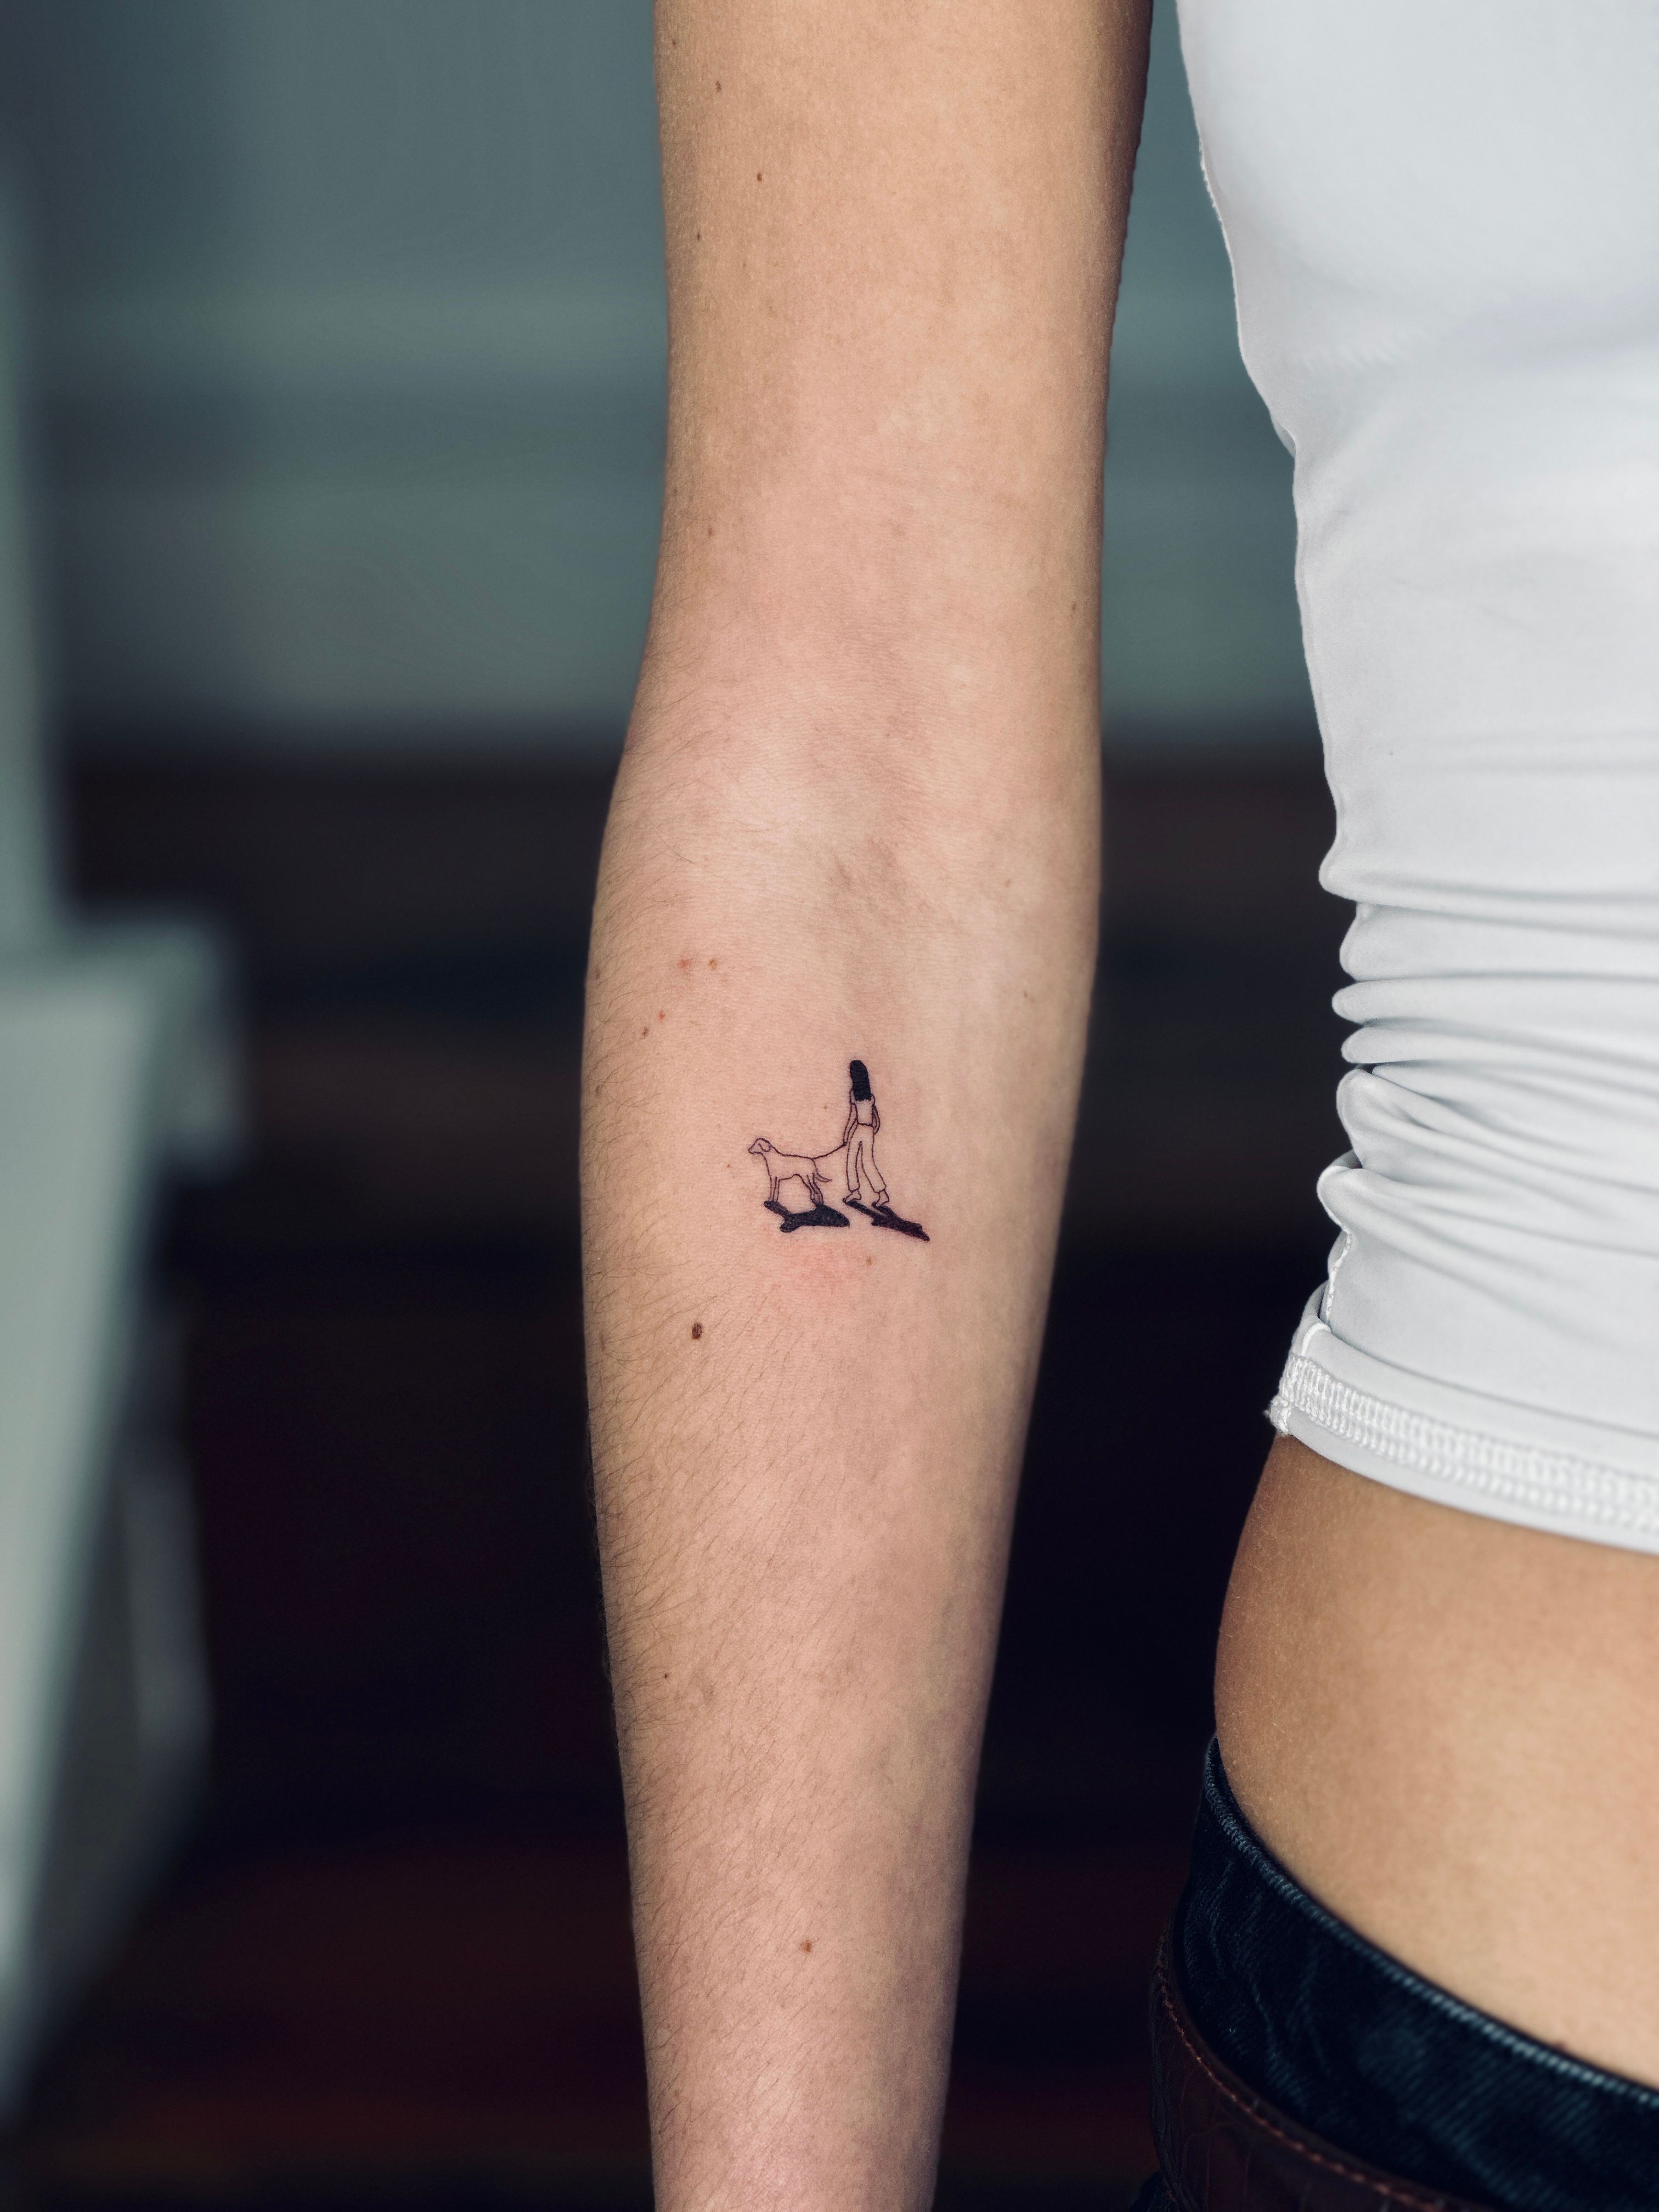 Minimalist rabbit portrait tattoo on the upper arm.